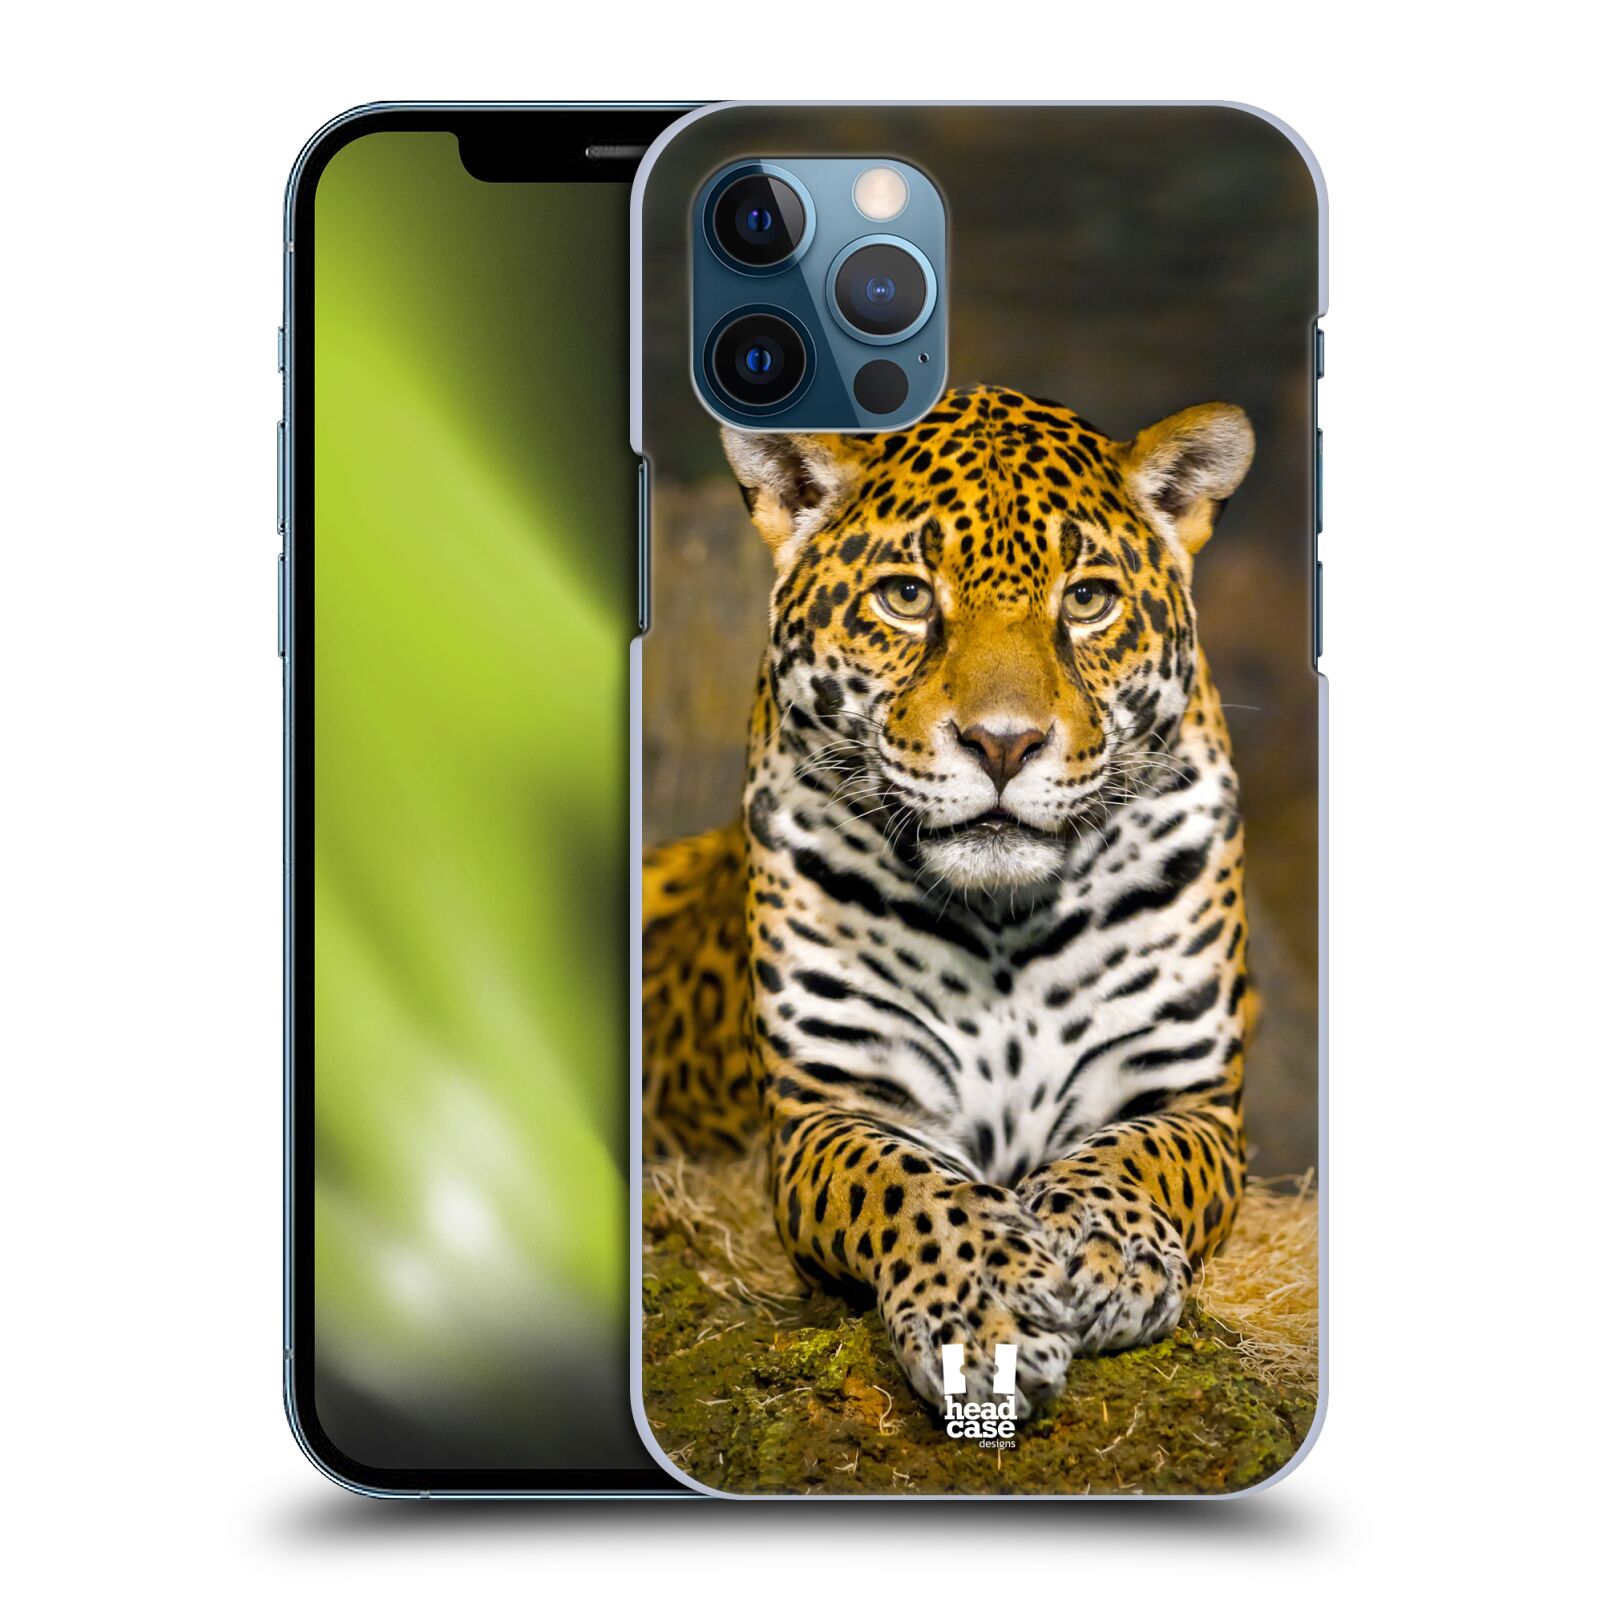 HEAD CASE plastový obal na mobil Apple Iphone 12 / Iphone 12 PRO vzor slavná zvířata foto jaguár